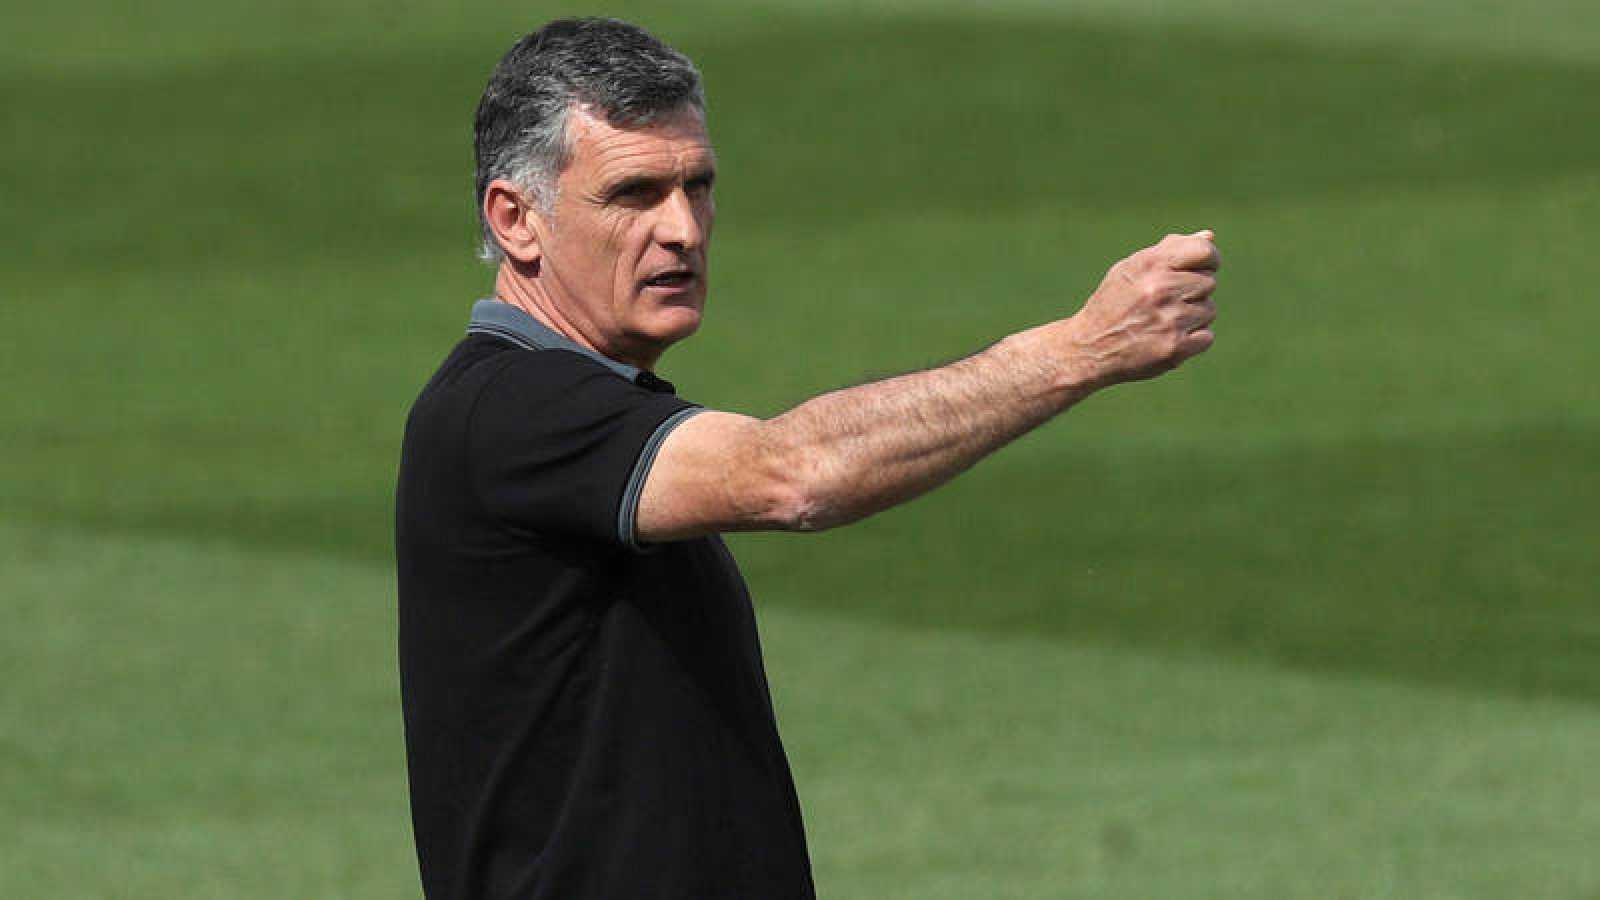 Liga : Mendilibar, nouvel entraîneur du Deportivo Alaves